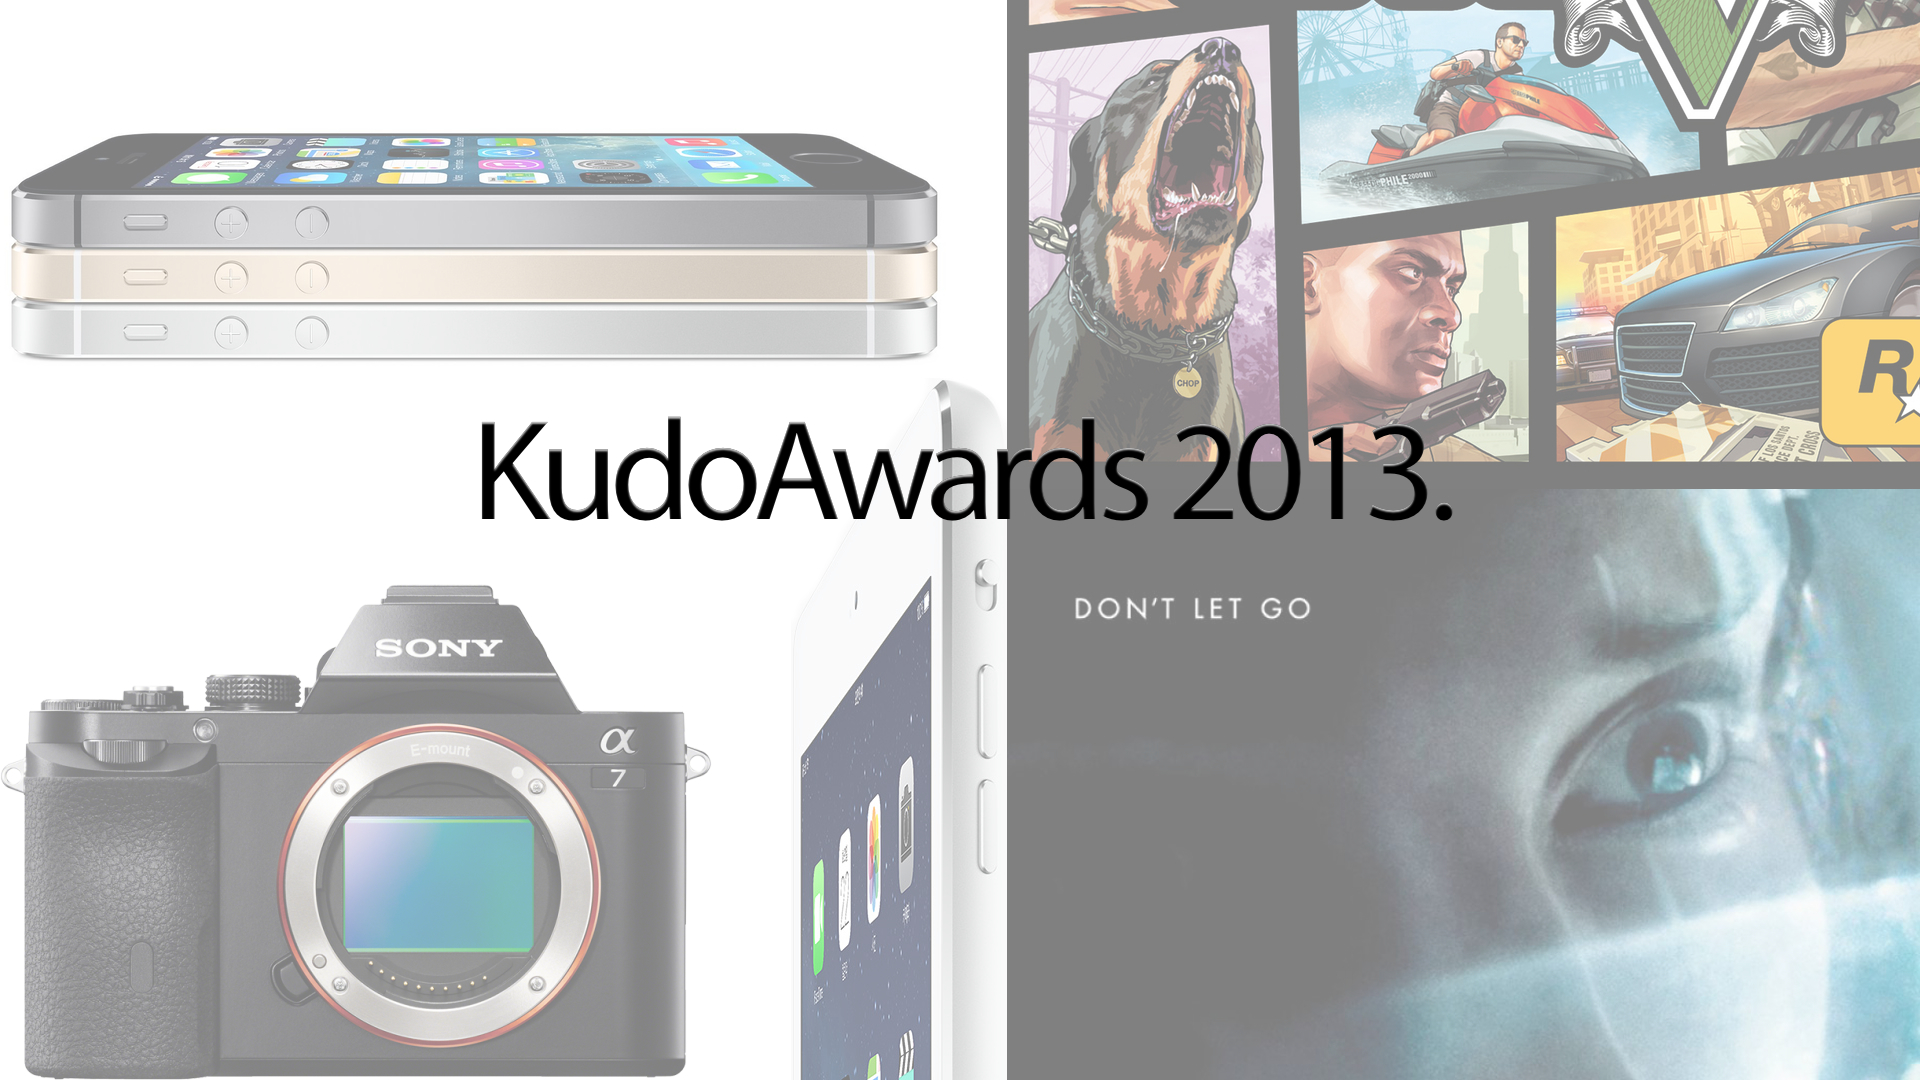 KudoAwards 2013